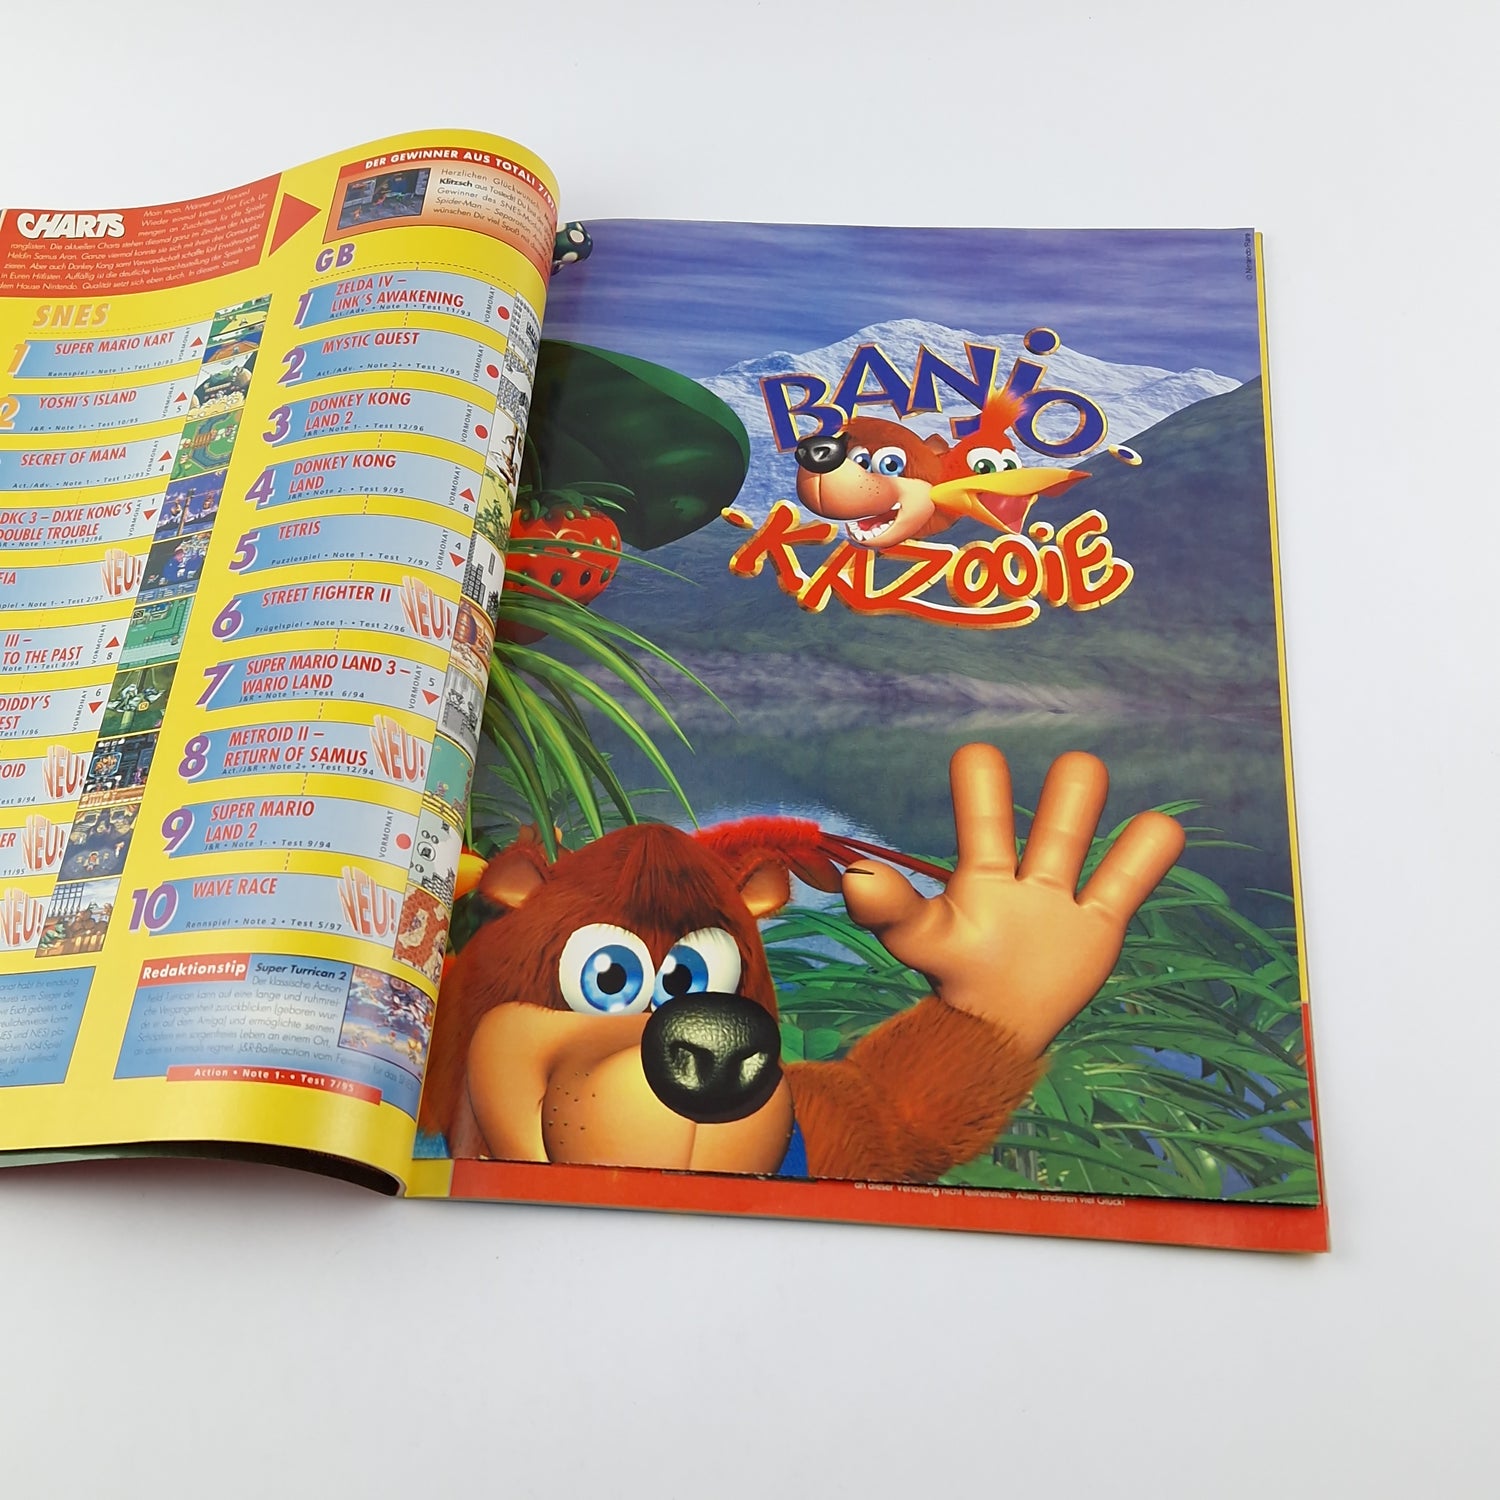 100% Nintendo TOTAL! Magazine : Banjo Kazooie - 8/97 August magazine poster